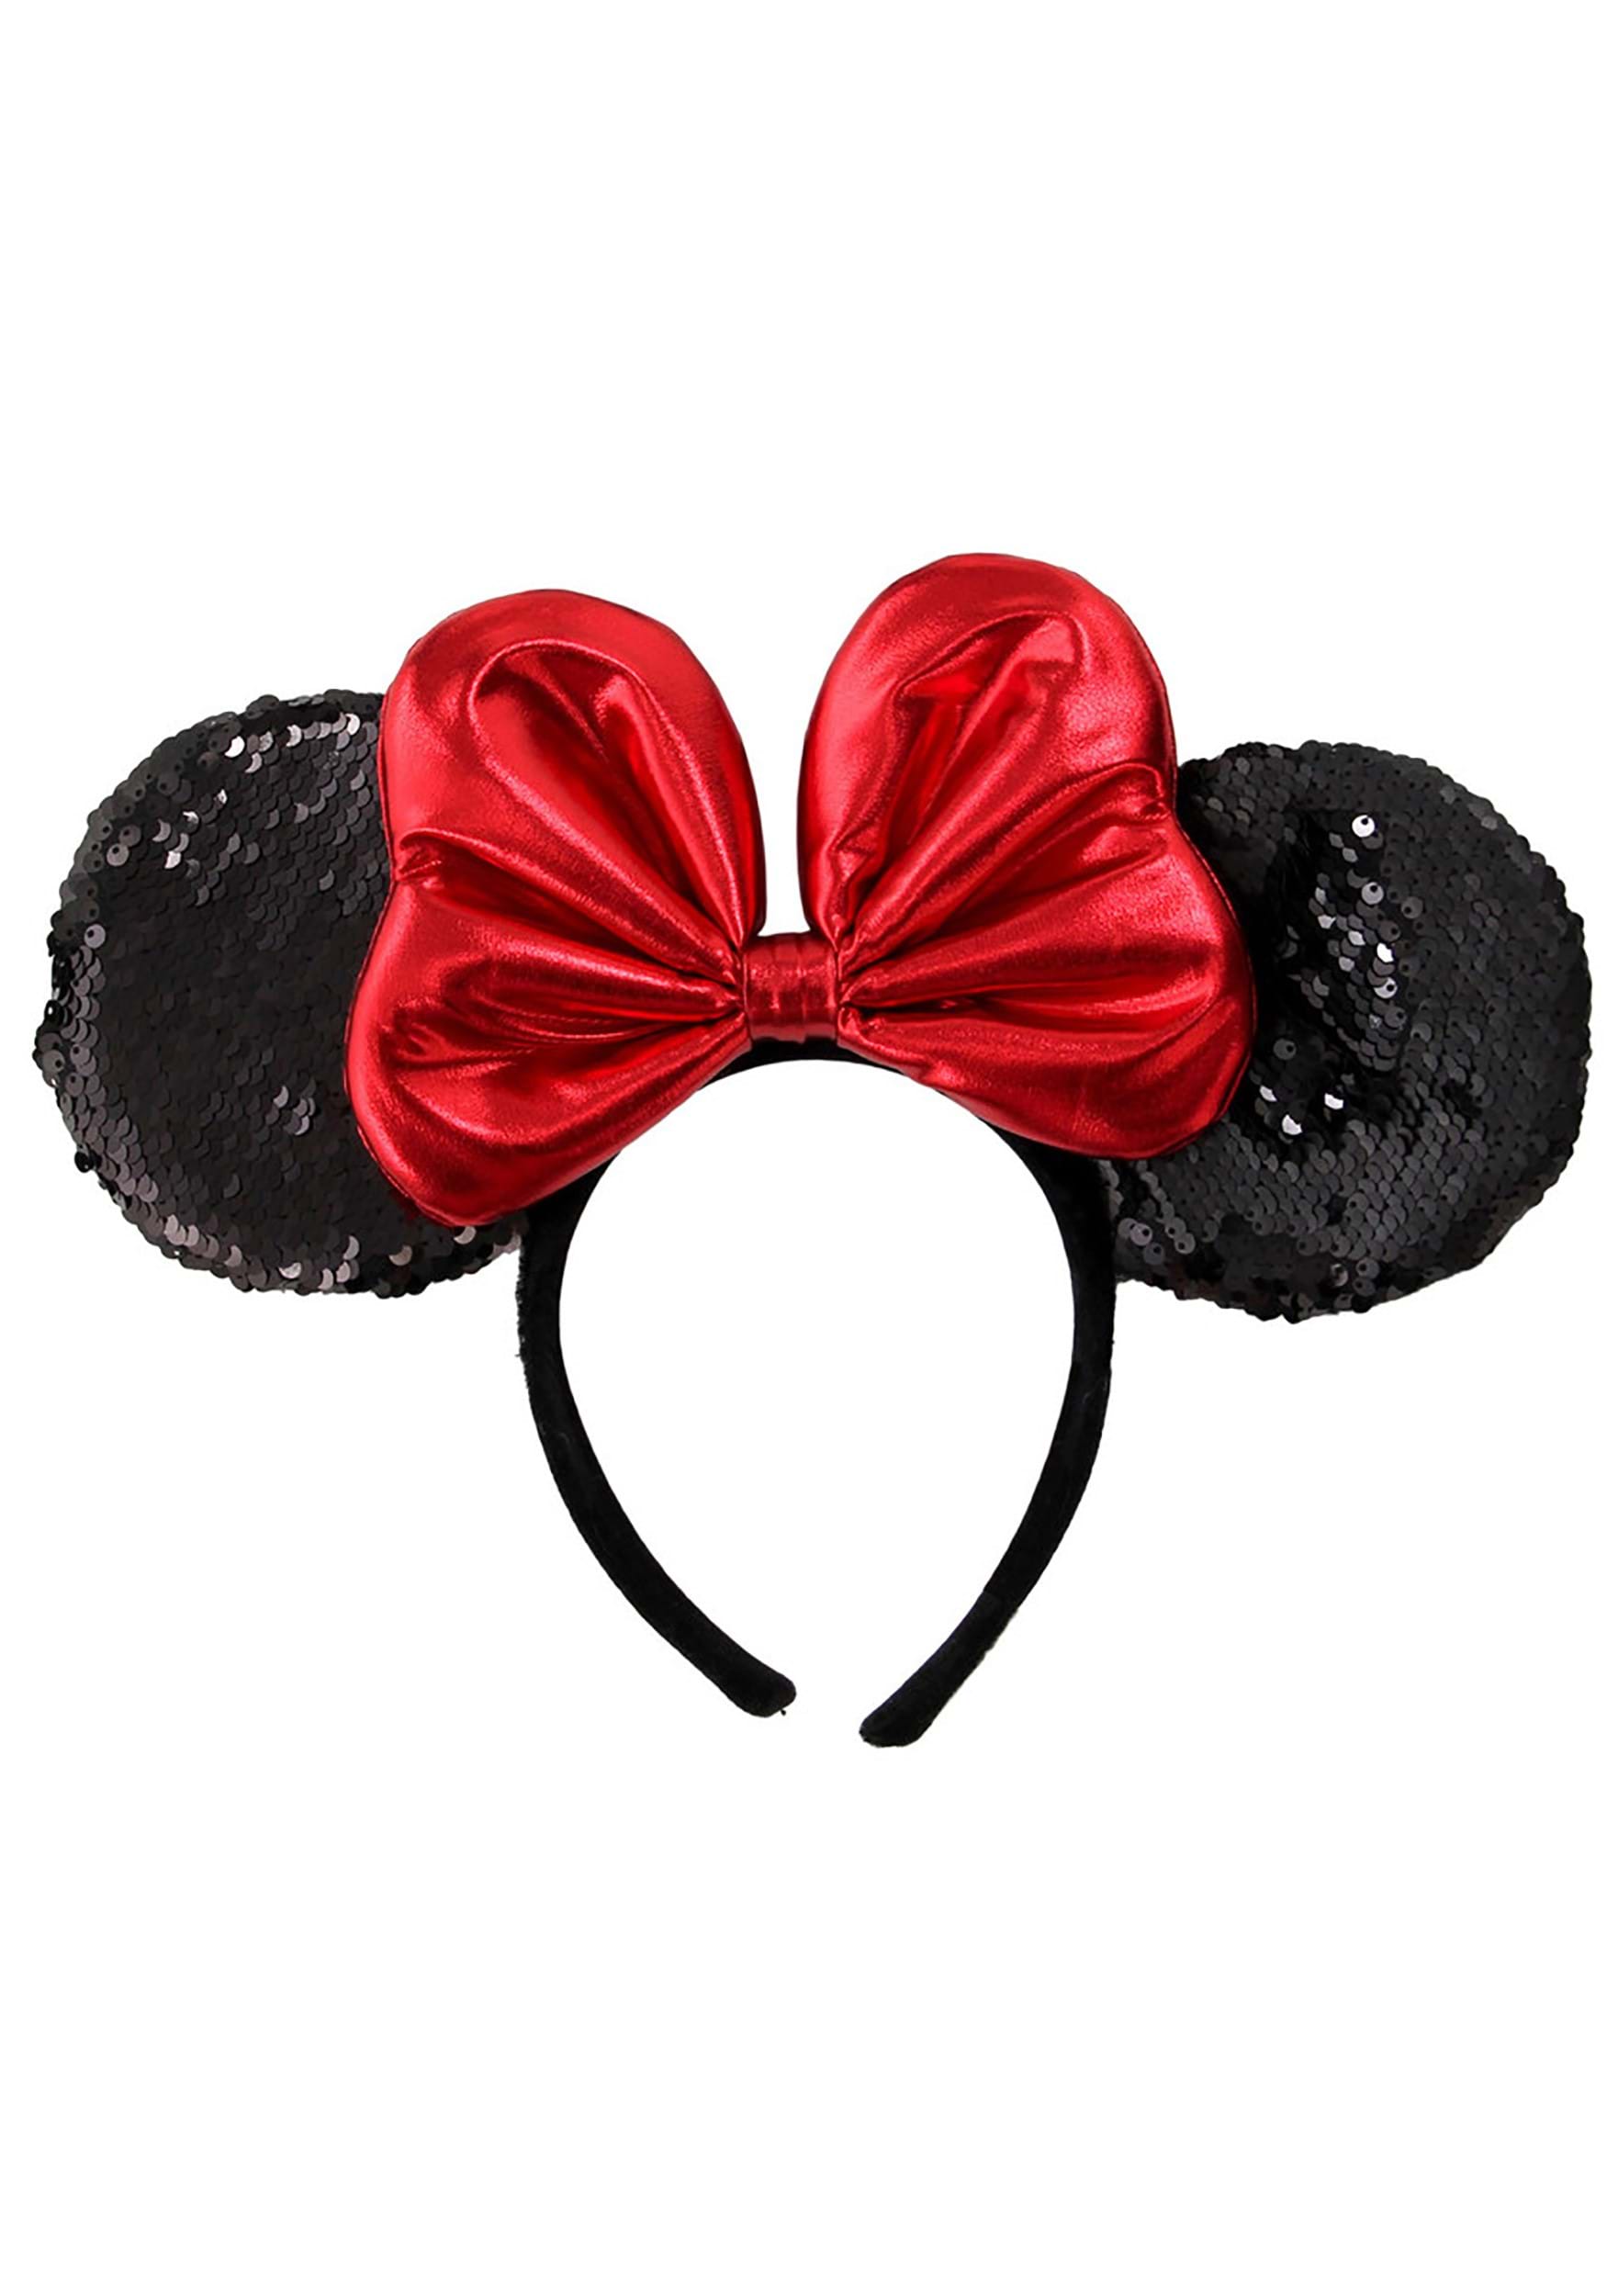 Minnie Sequin Ears Costume Headband